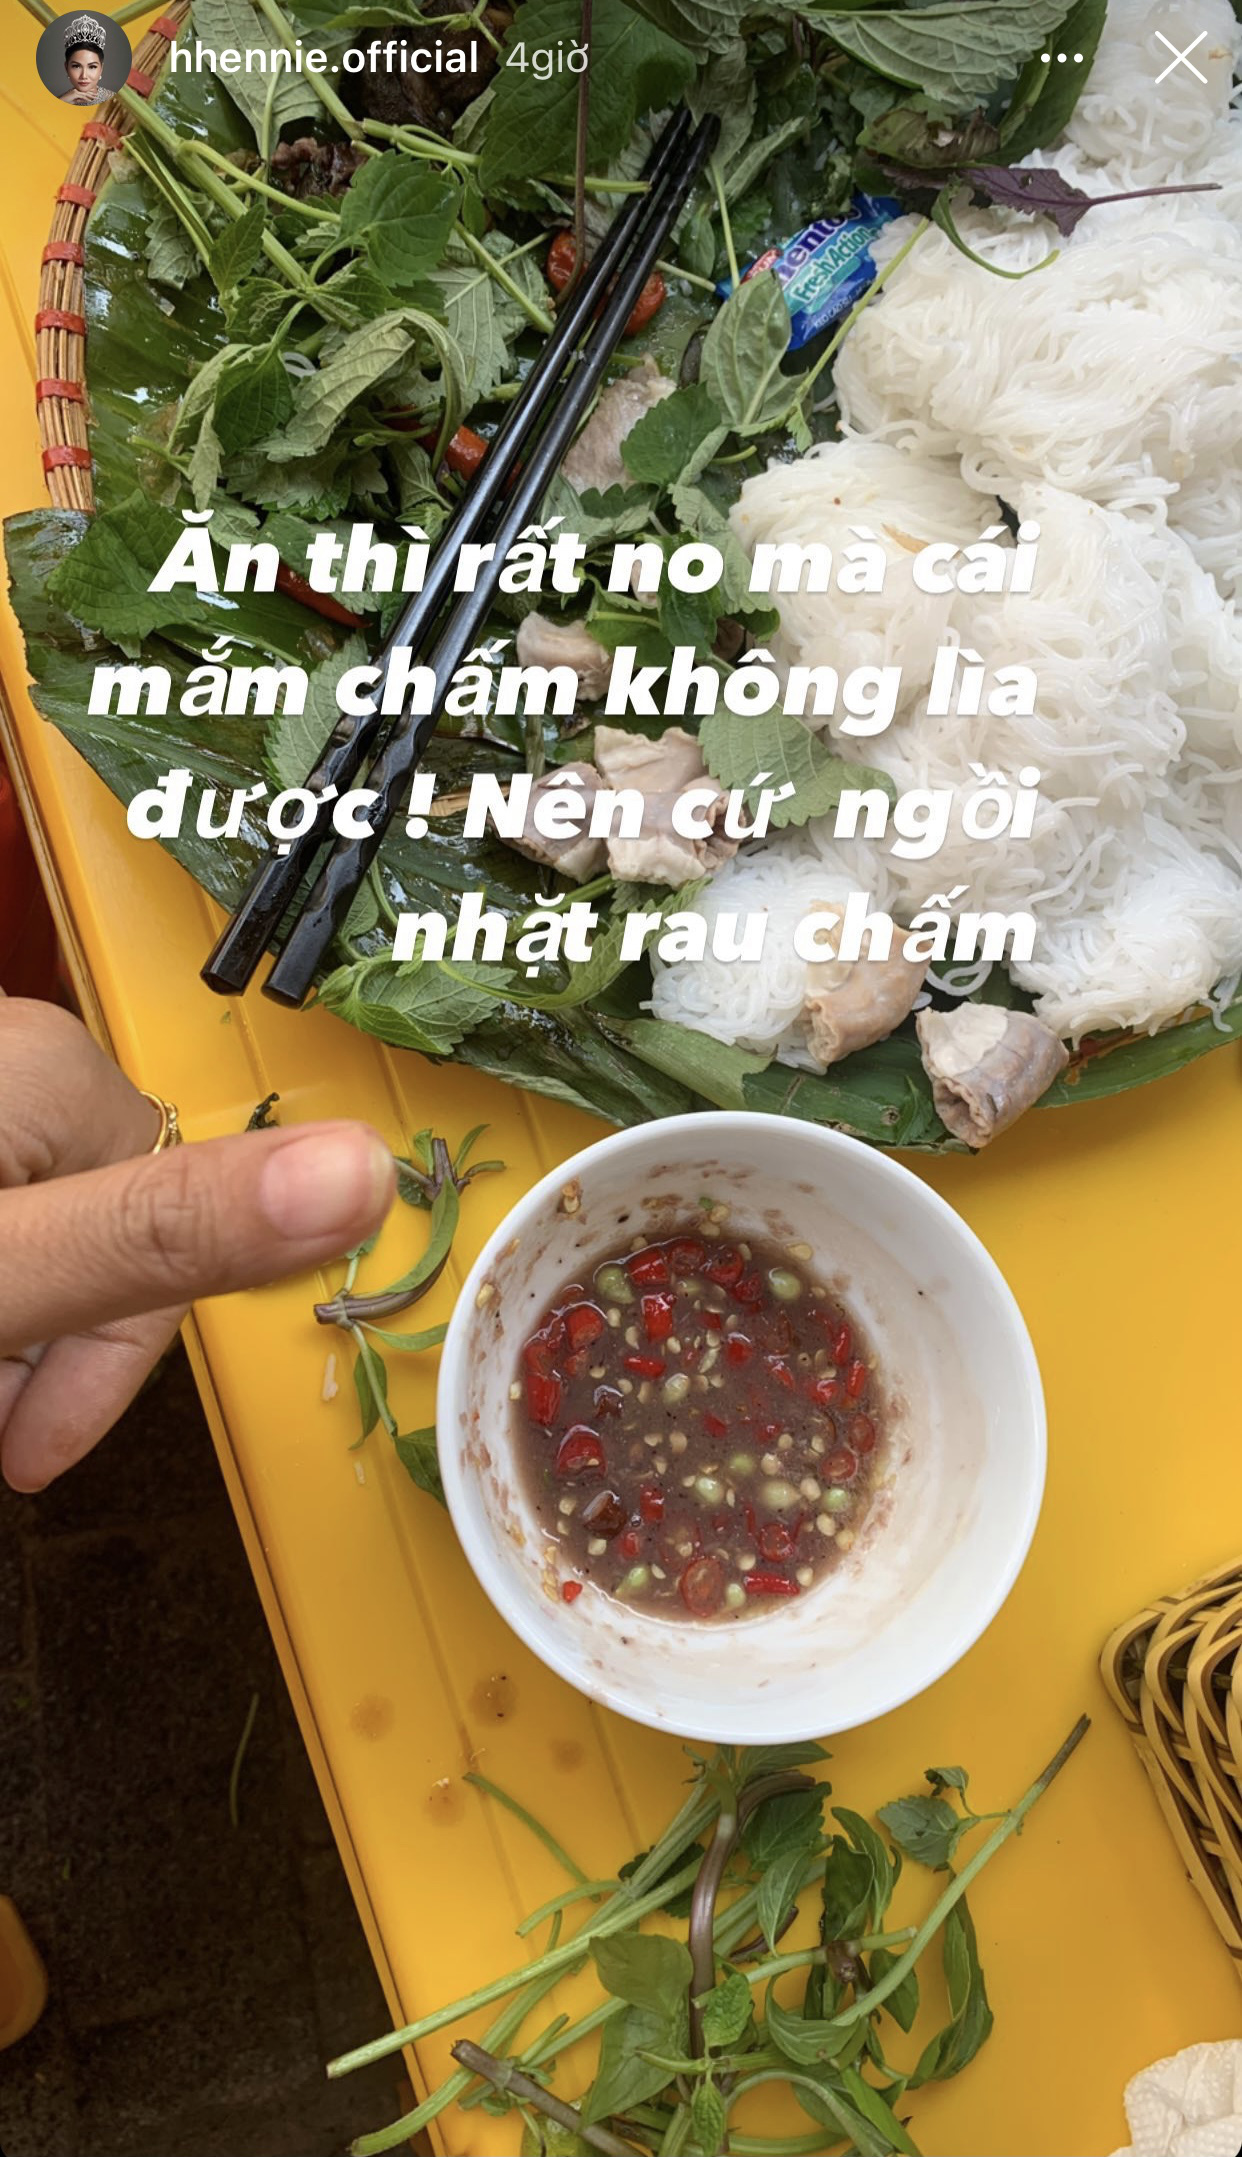 HHen Niê khoe đi Hà Nội xịn: mê mẩn loại củ đặc biệt, không ngại xin quả ở cây ven đường - Ảnh 3.